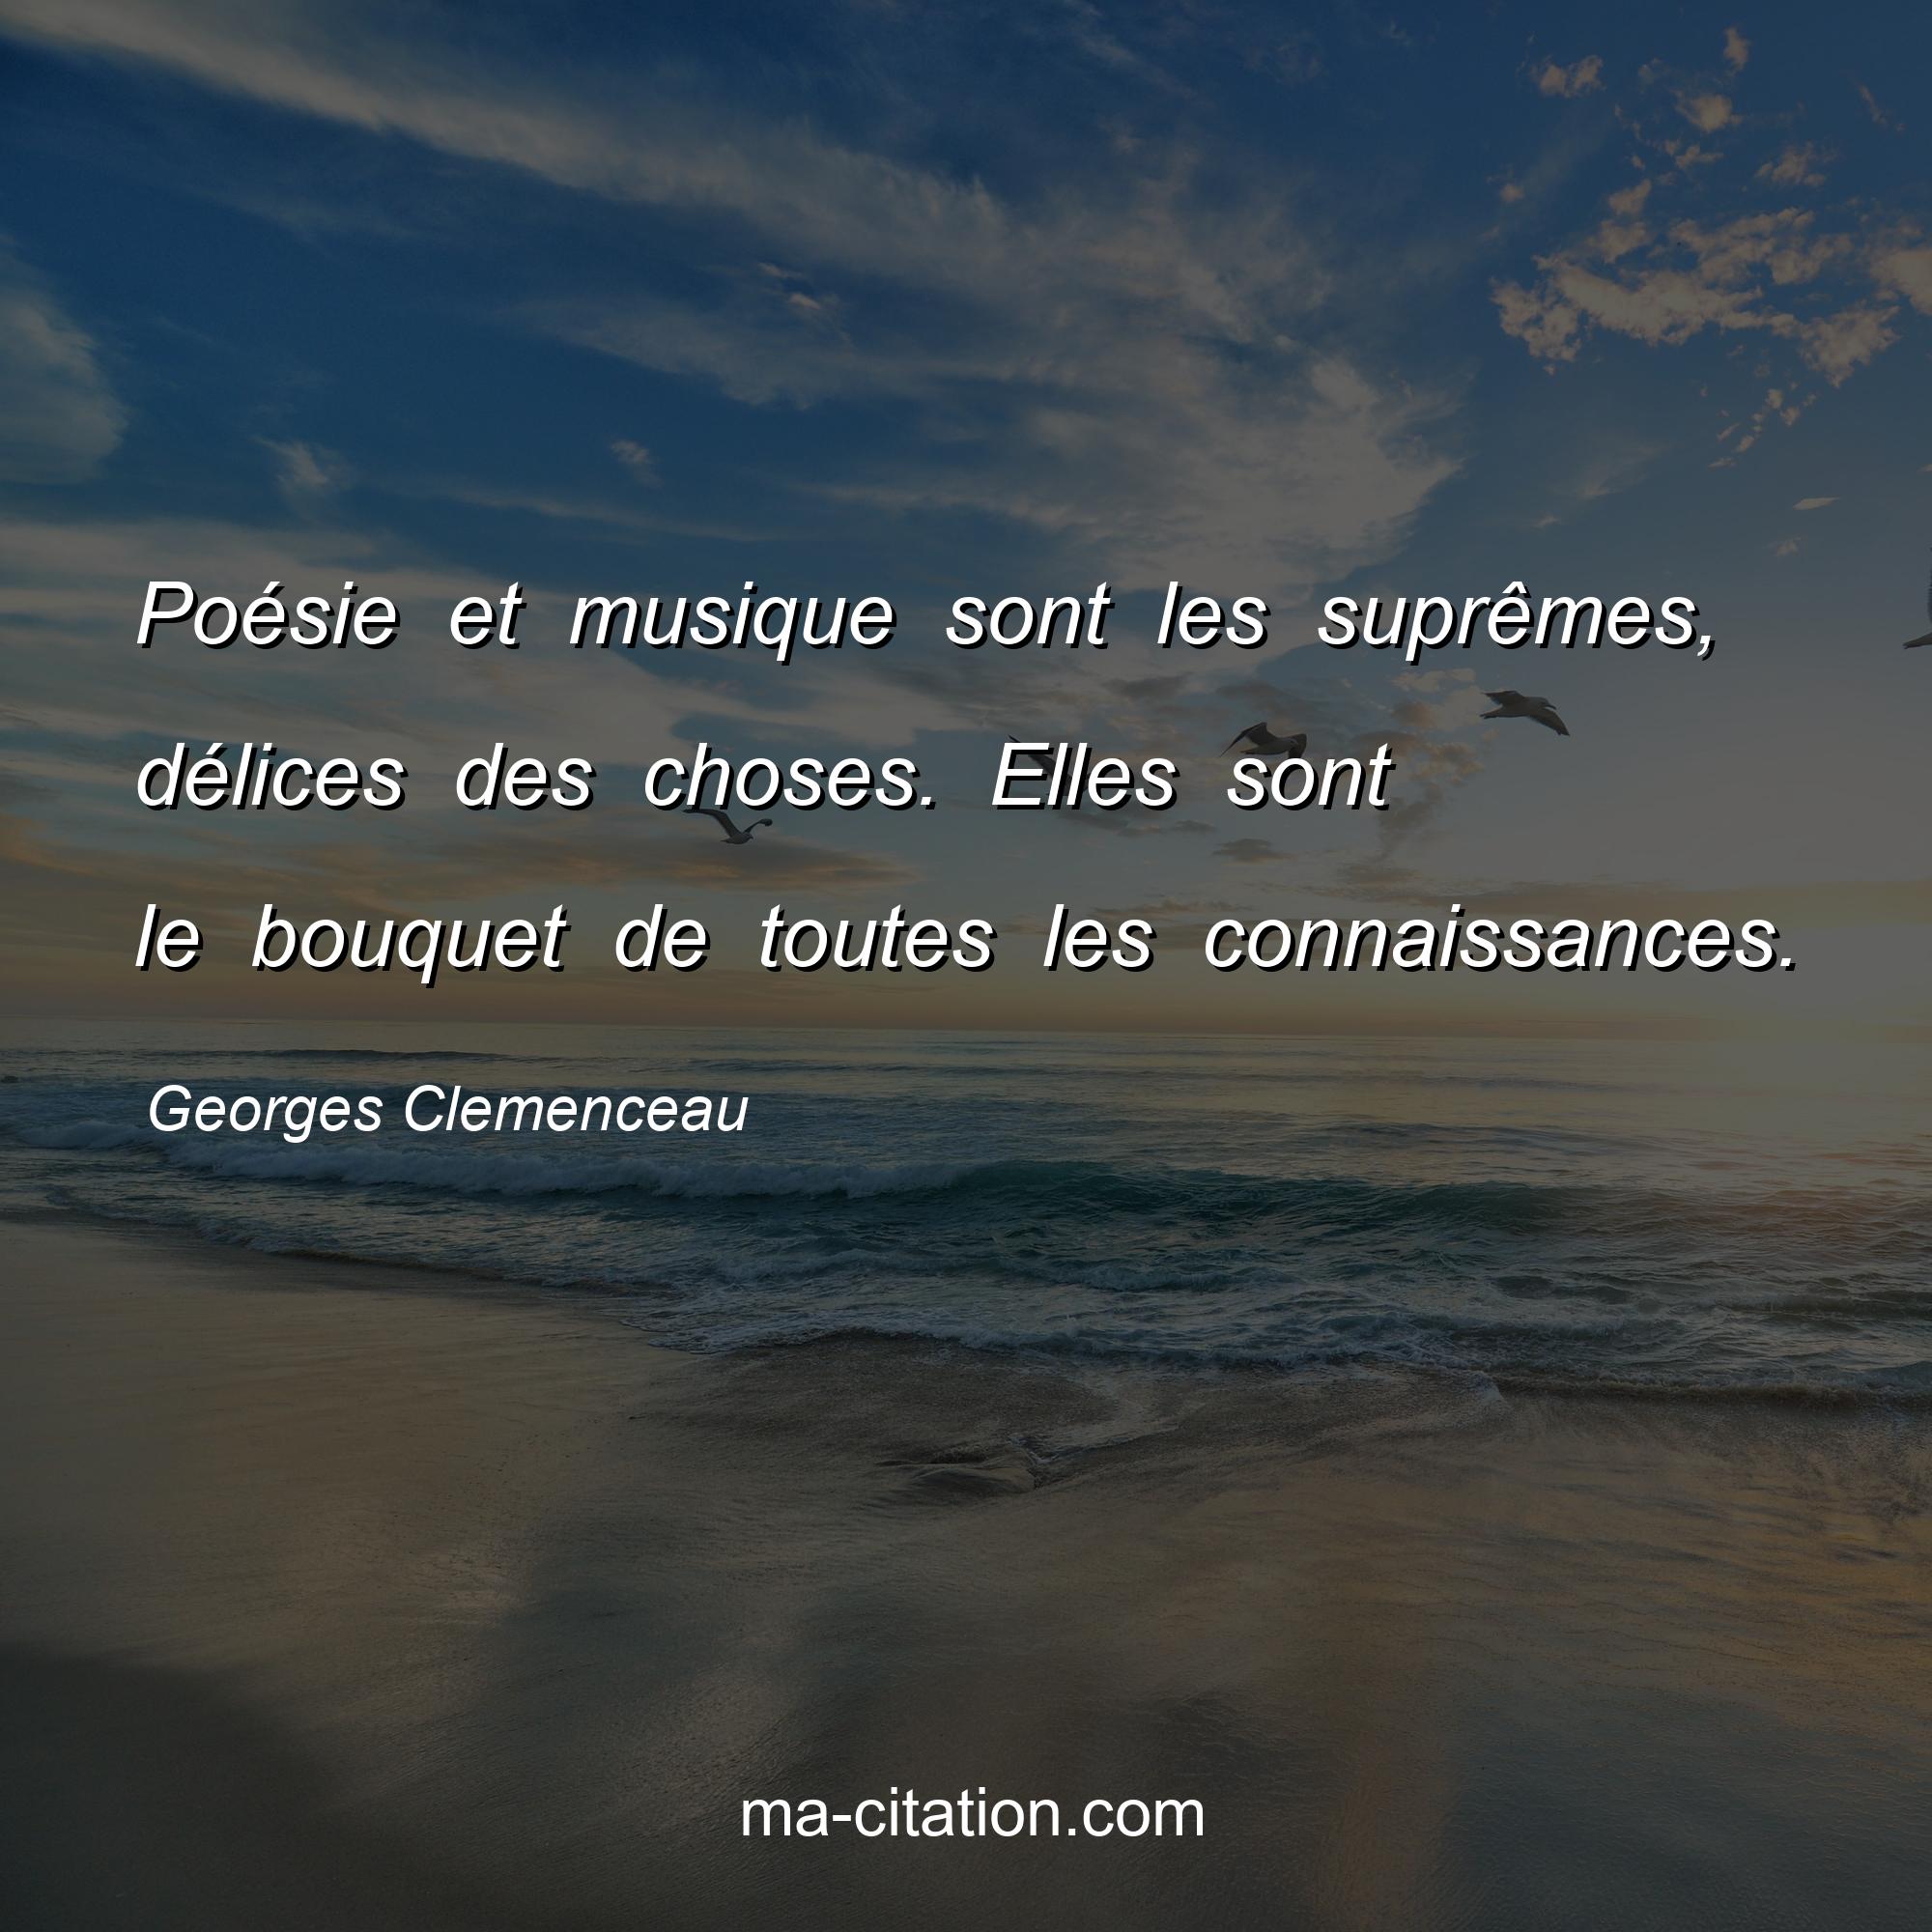 Georges Clemenceau : Poésie et musique sont les suprêmes, délices des choses. Elles sont le bouquet de toutes les connaissances.